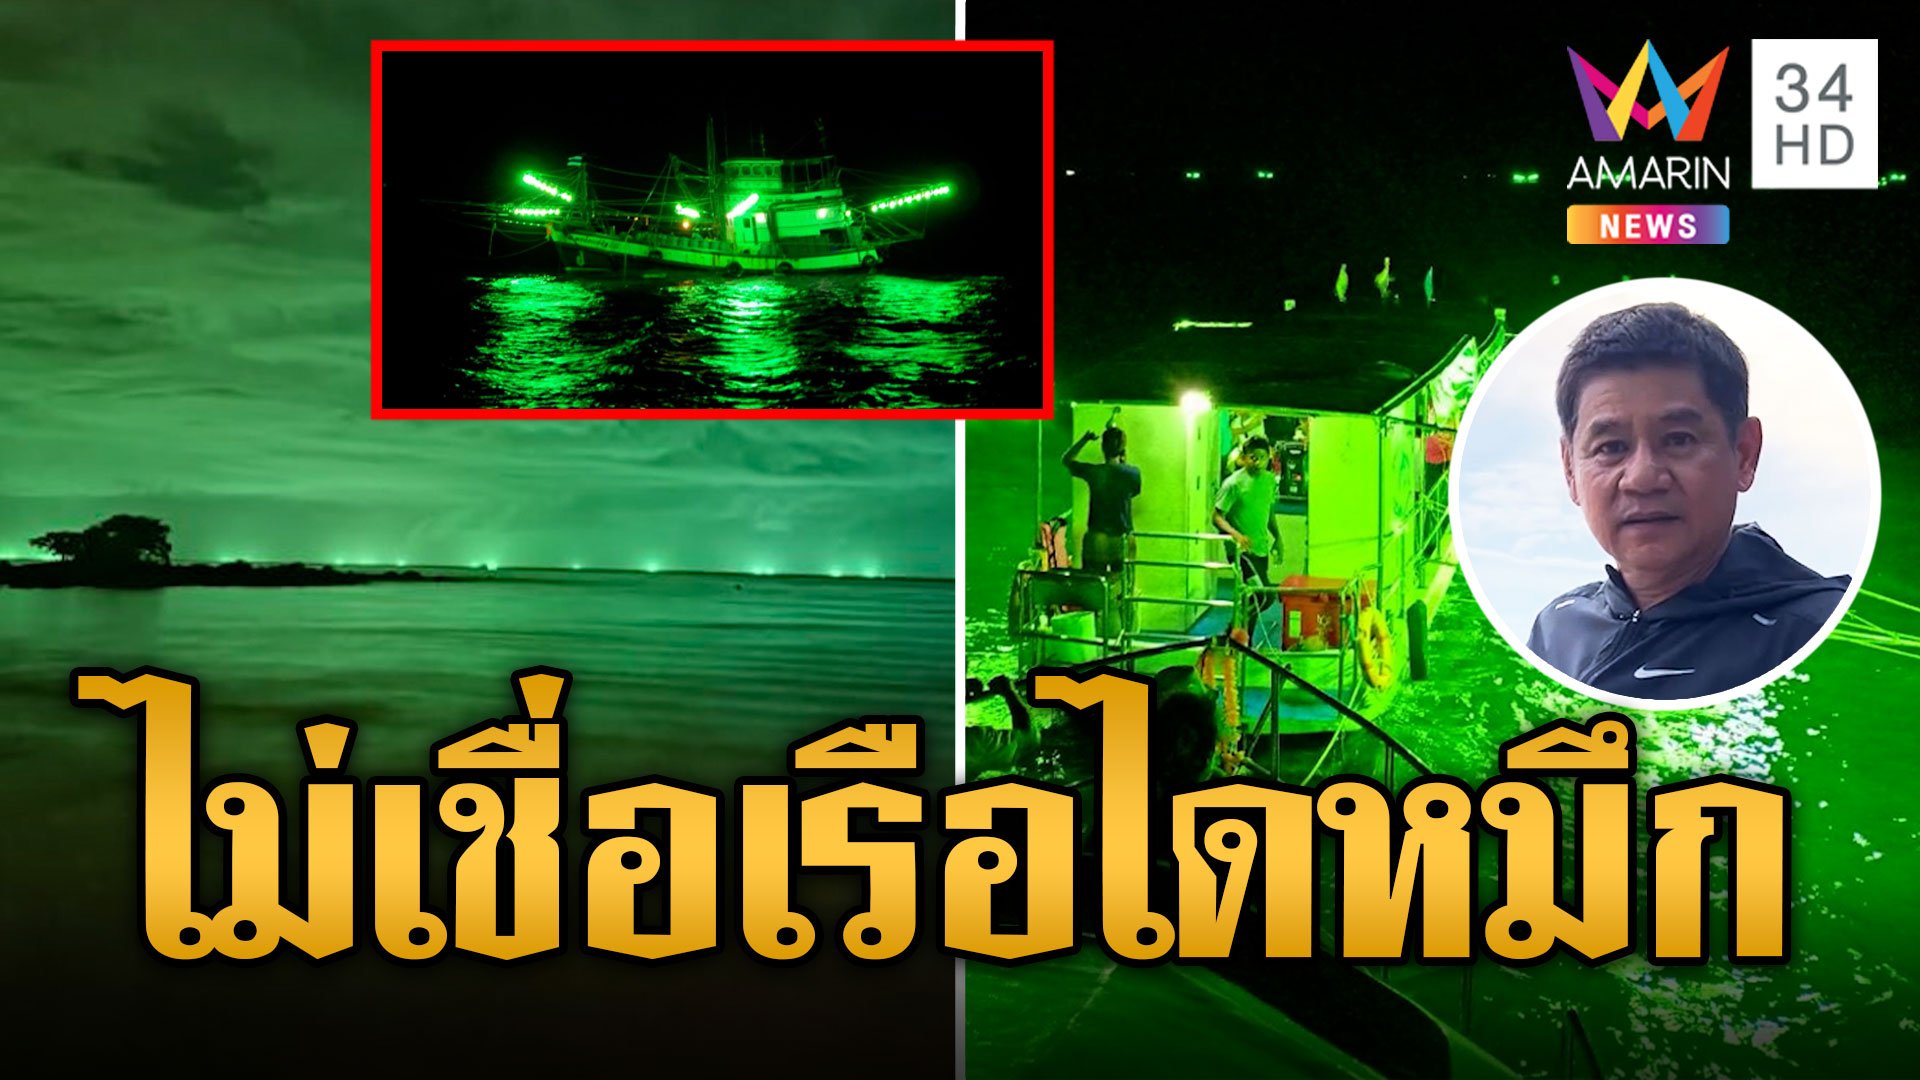 ชัยวัฒน์ ยังไม่เชื่อ แสงสีเขียวเป็นเรือไดหมึก เกิดมายังไม่เคยเห็น | ข่าวอรุณอมรินทร์ | 5 พ.ย. 66 | AMARIN TVHD34